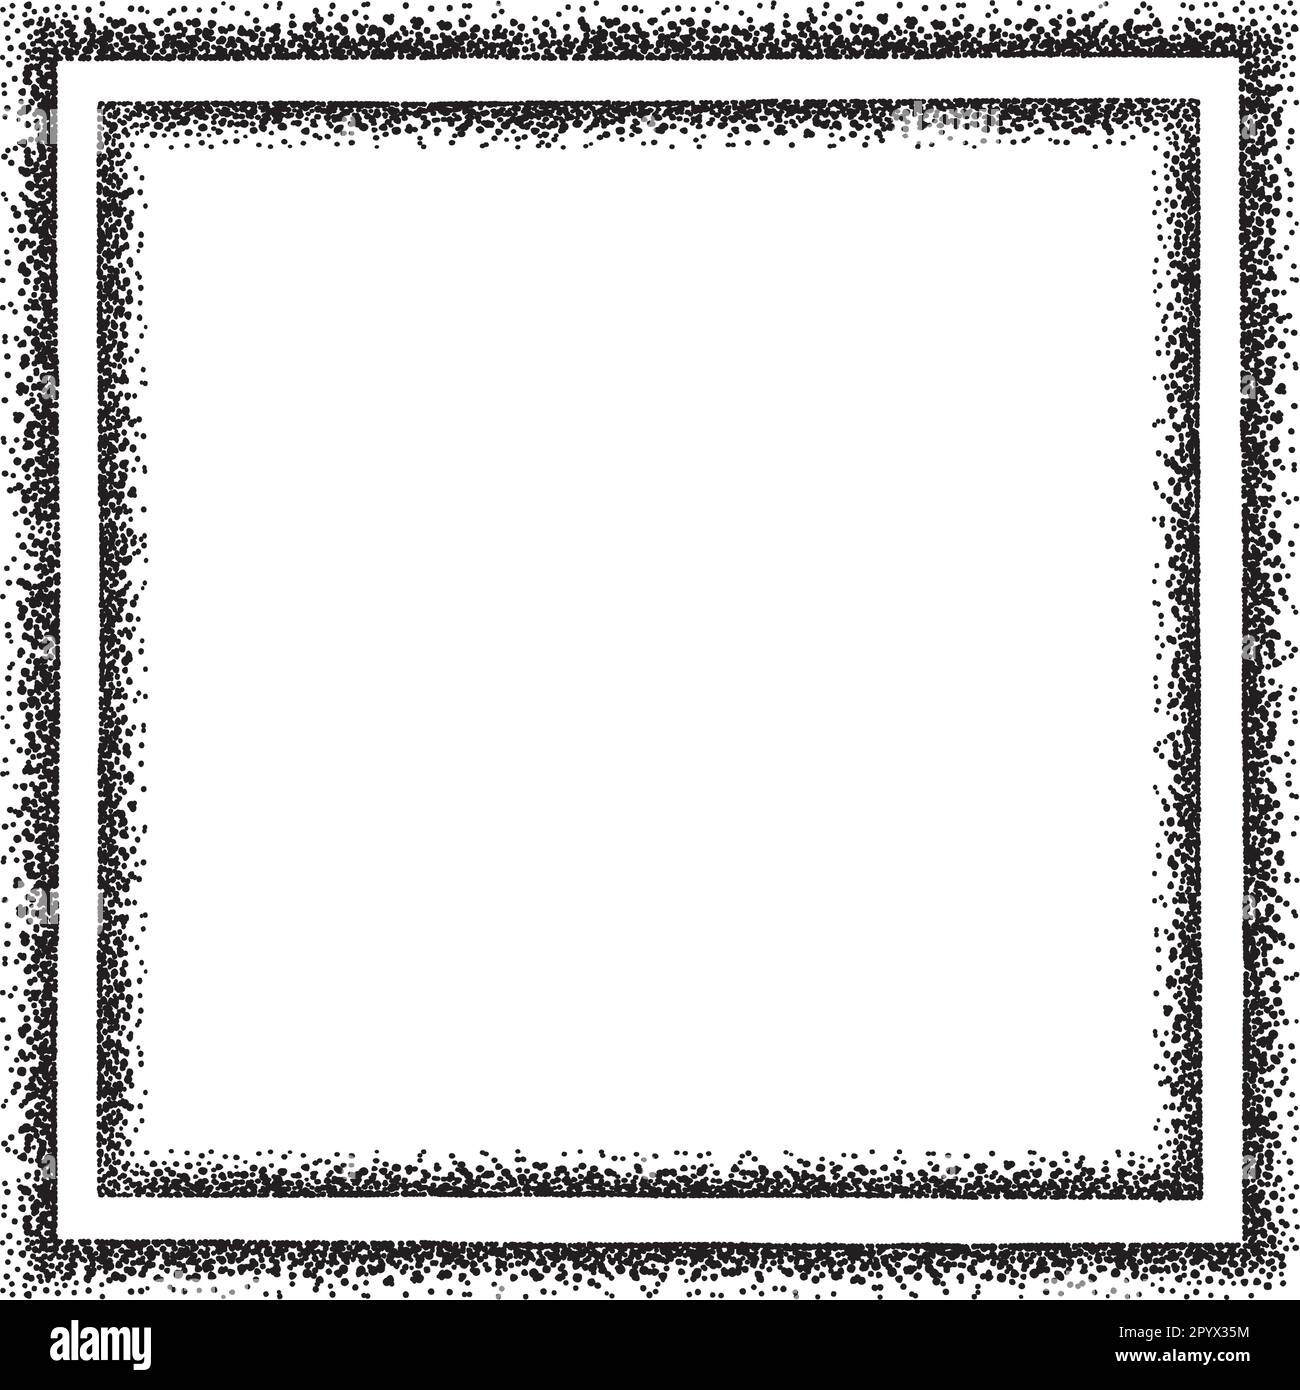 Ein quadratischer Rand, der als Rahmen für Ihre Designs verwendet werden kann, mit unregelmäßigen schwarzen Punkten. Stock Vektor